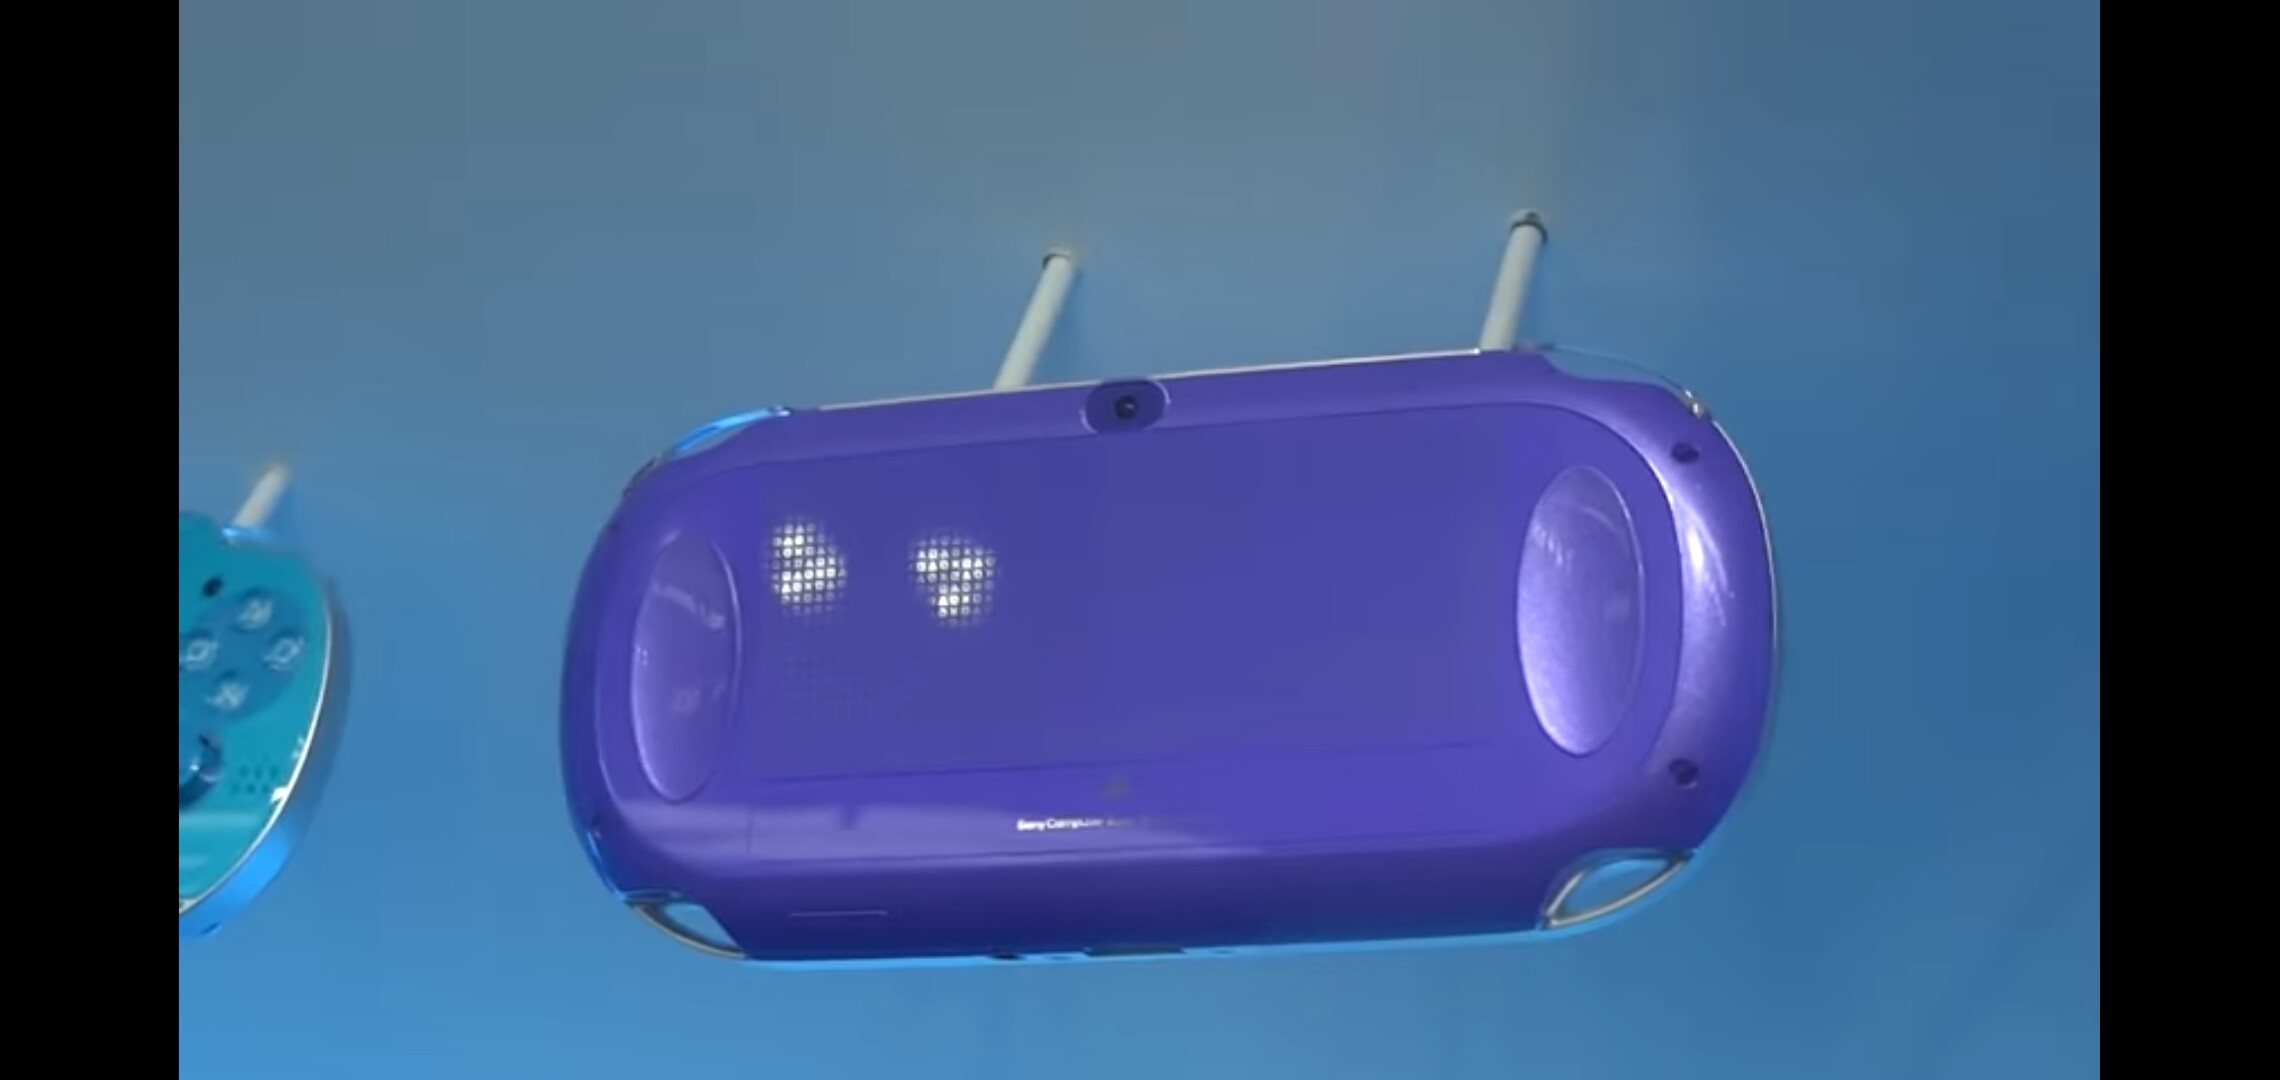 Sony PS Vita PCH-1000 Purple Console